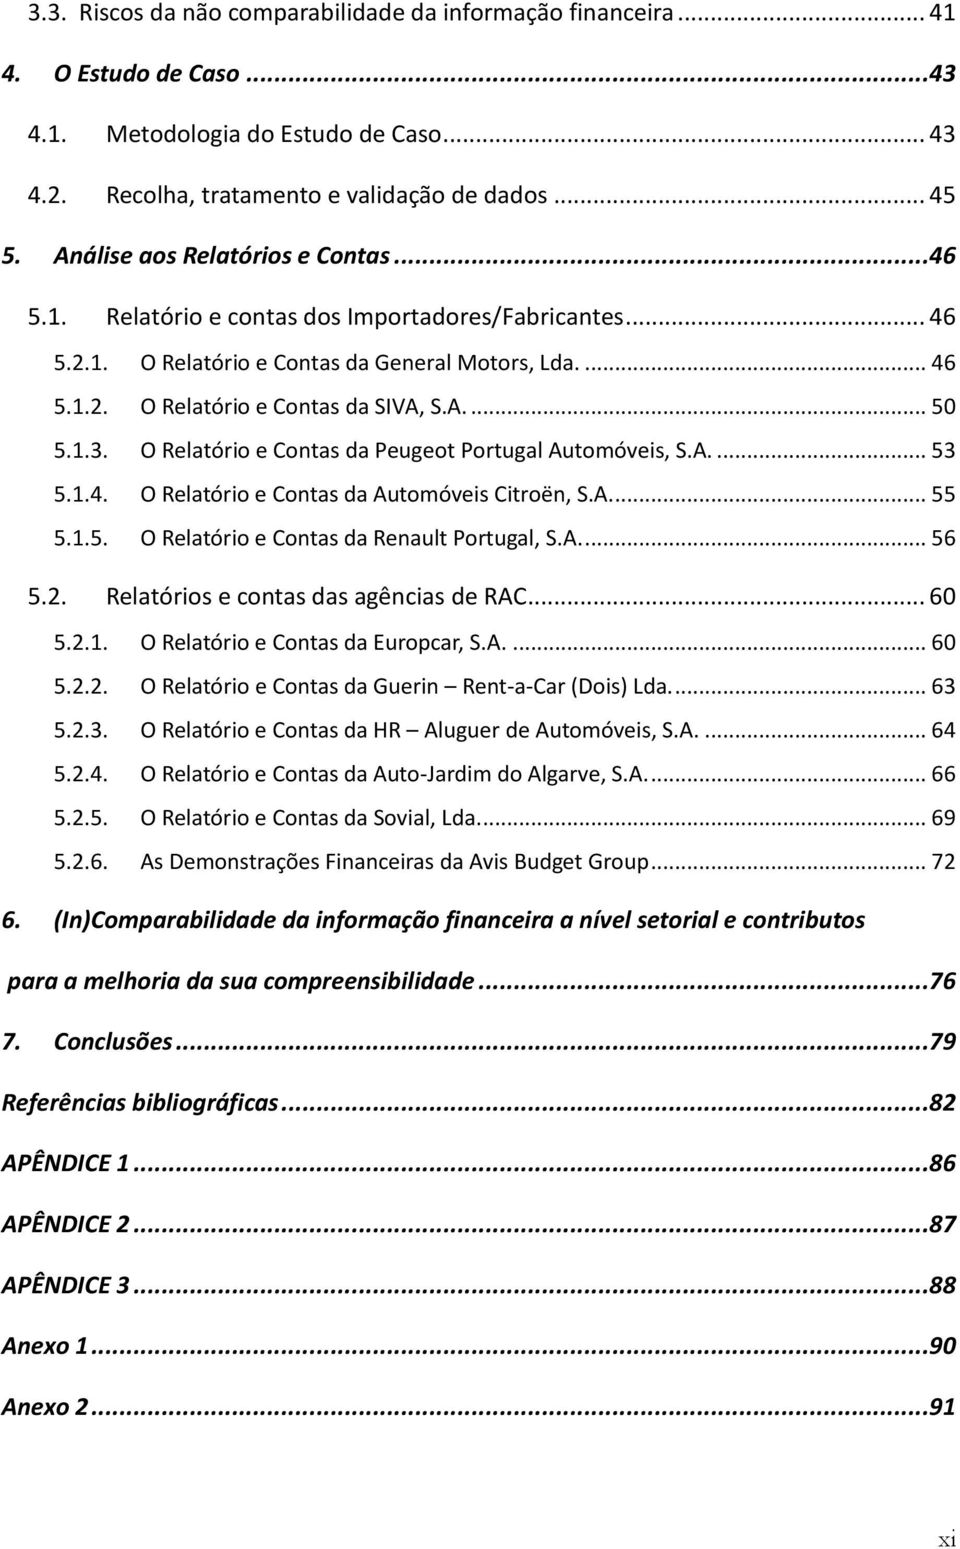 1.3. O Relatório e Contas da Peugeot Portugal Automóveis, S.A.... 53 5.1.4. O Relatório e Contas da Automóveis Citroën, S.A.... 55 5.1.5. O Relatório e Contas da Renault Portugal, S.A.... 56 5.2.